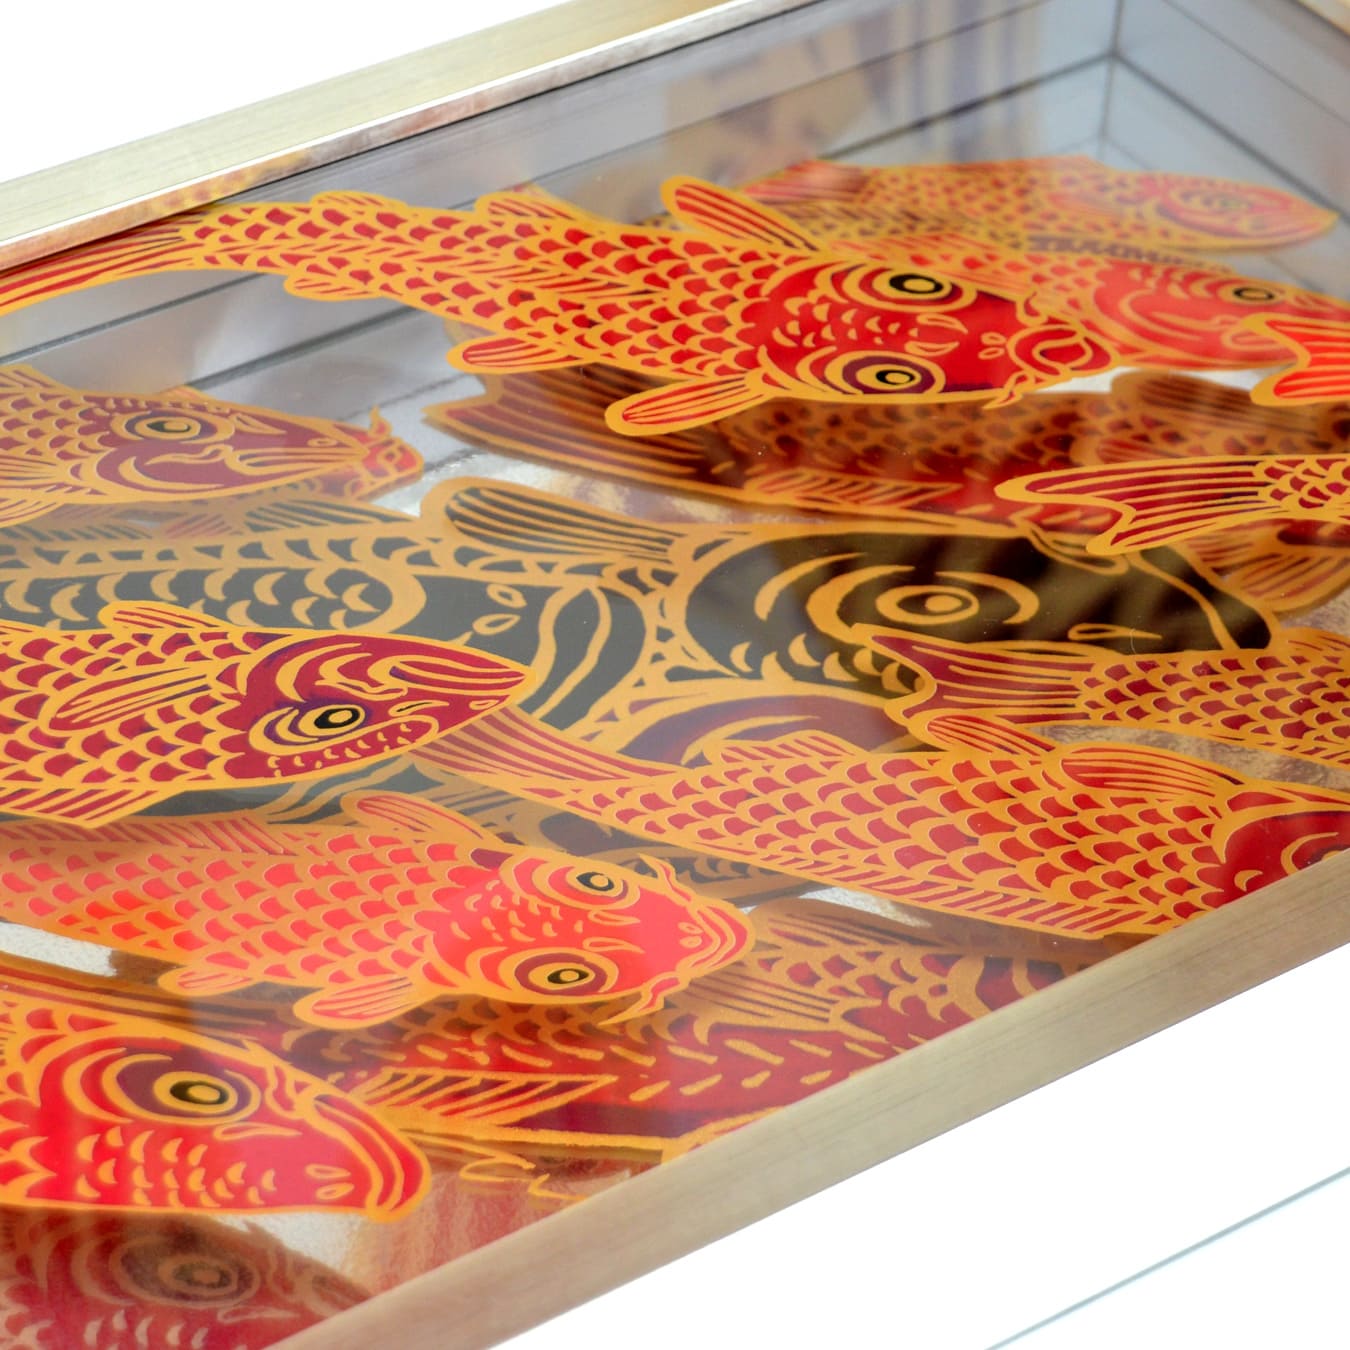 <tc>Silk screen Acrylic 3 layers "Carp is Dragon in Heaven"</tc>